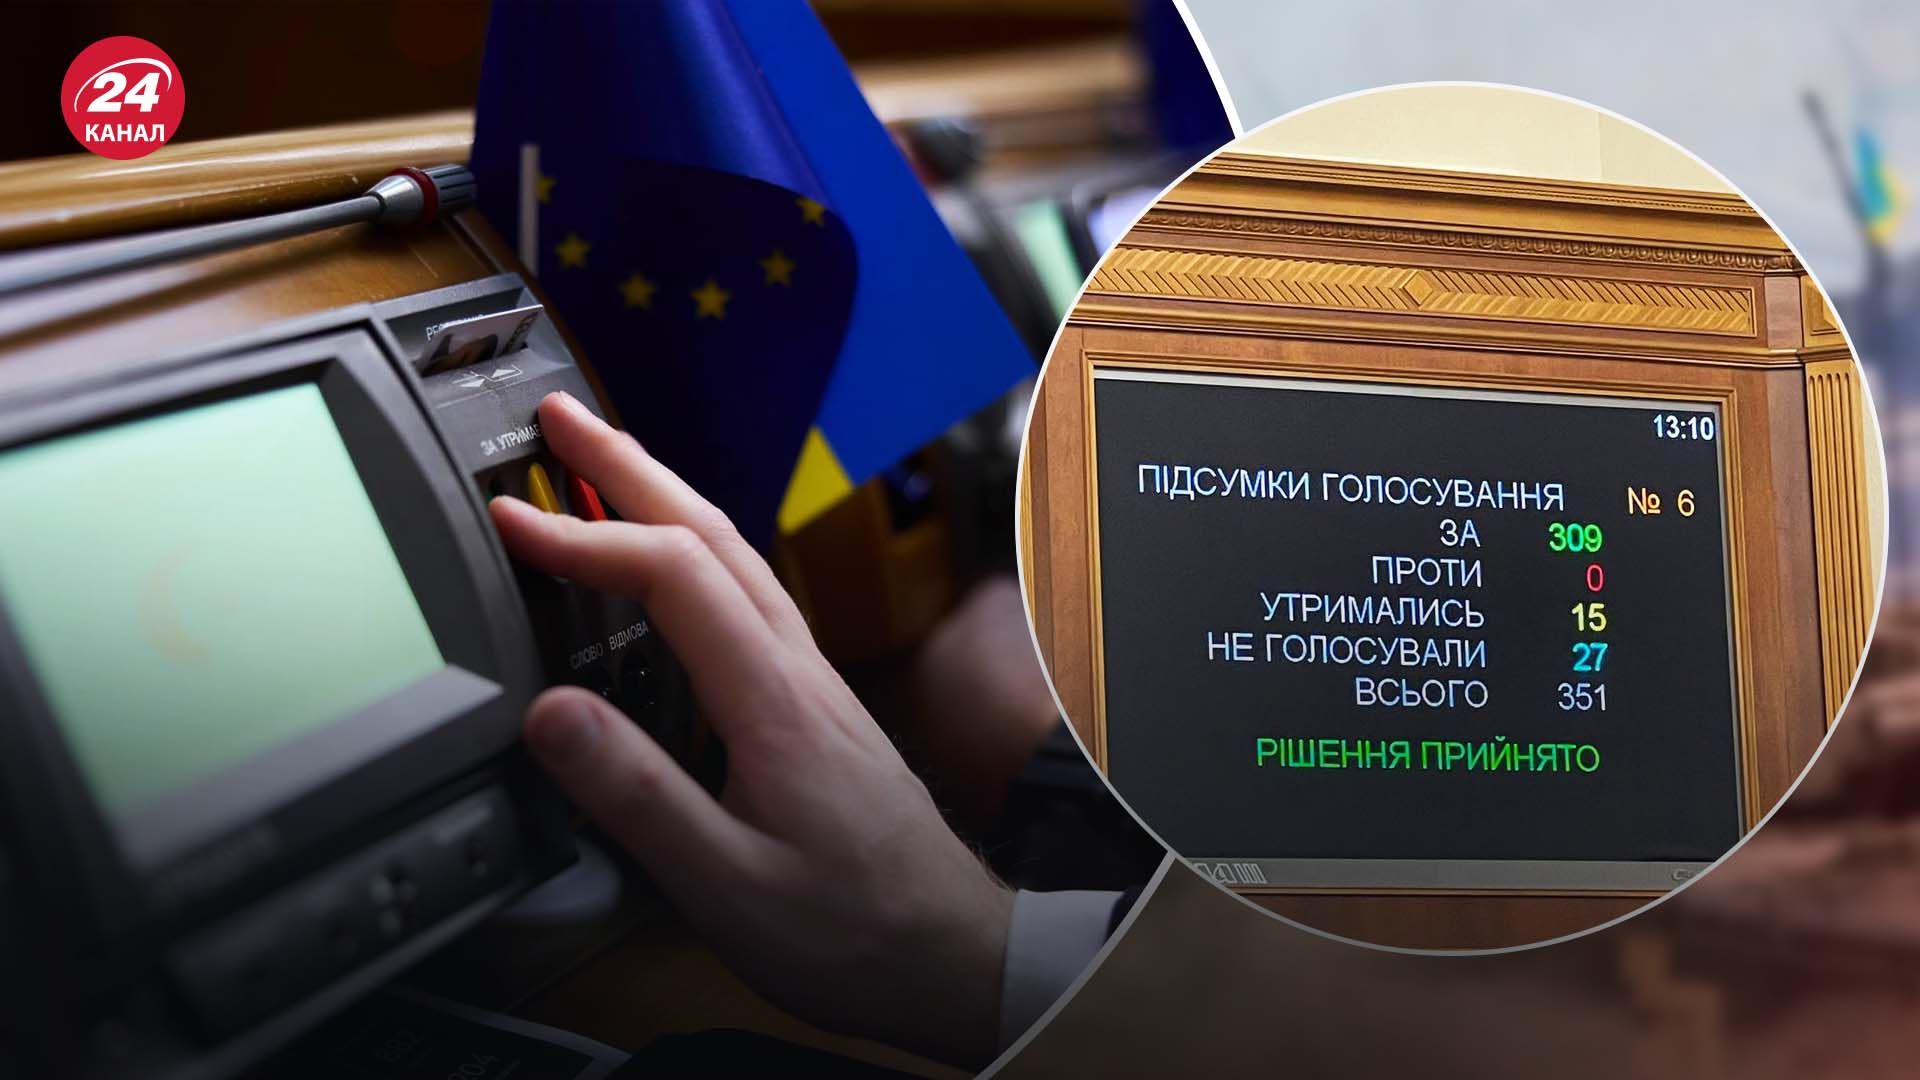 Рада приняла в первом чтении законопроект о лоббировании, которого ждали в ЕС